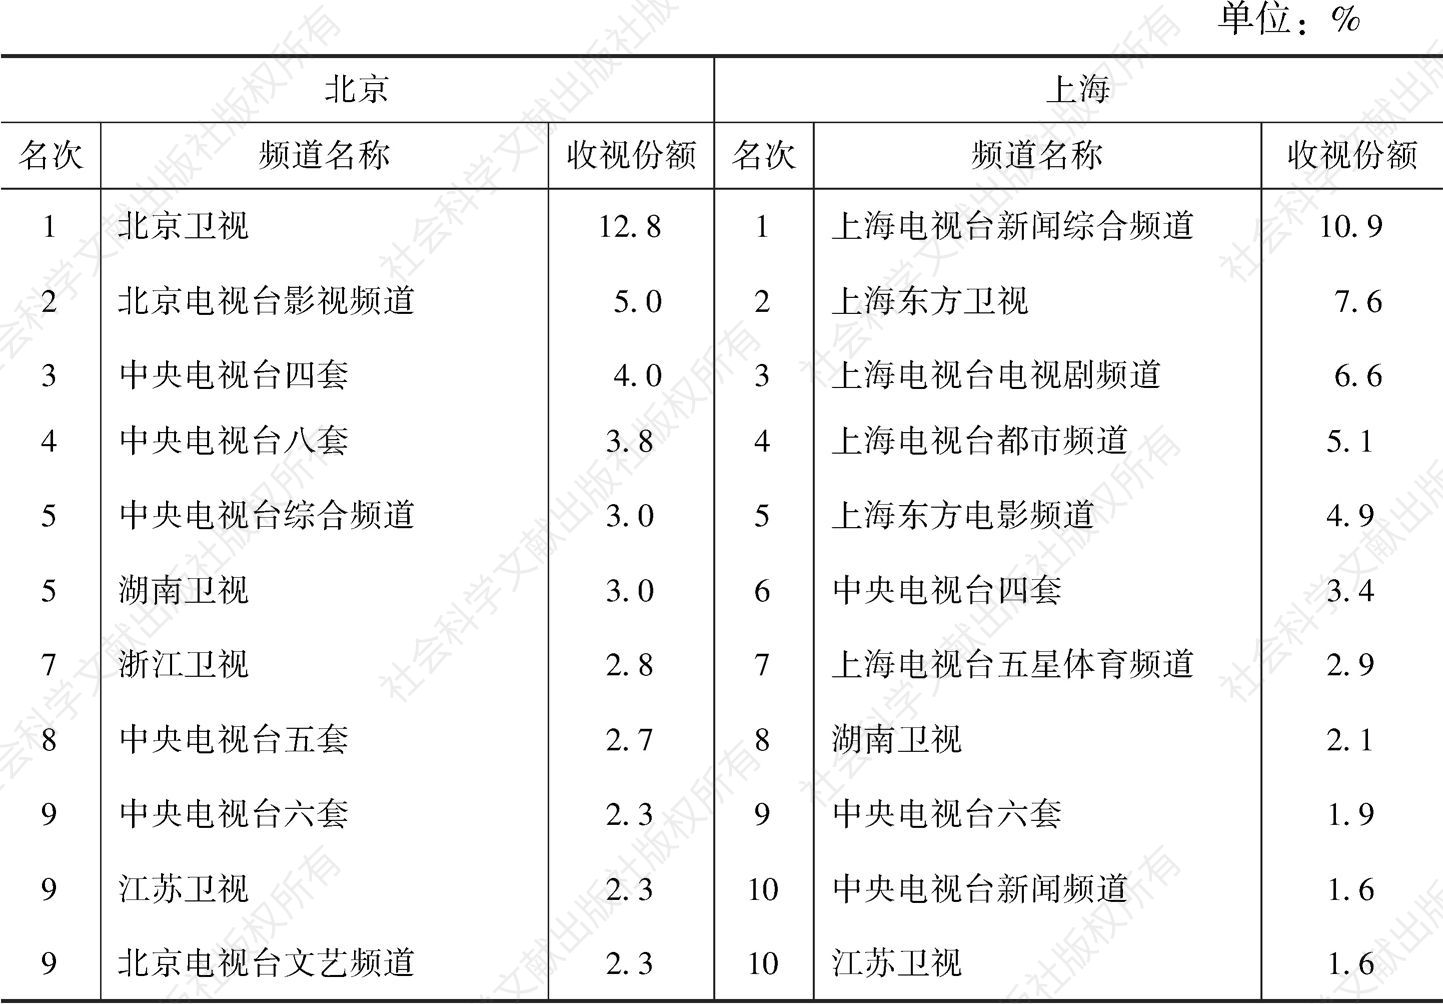 2019年北京/上海市场频道收视份额TOP10